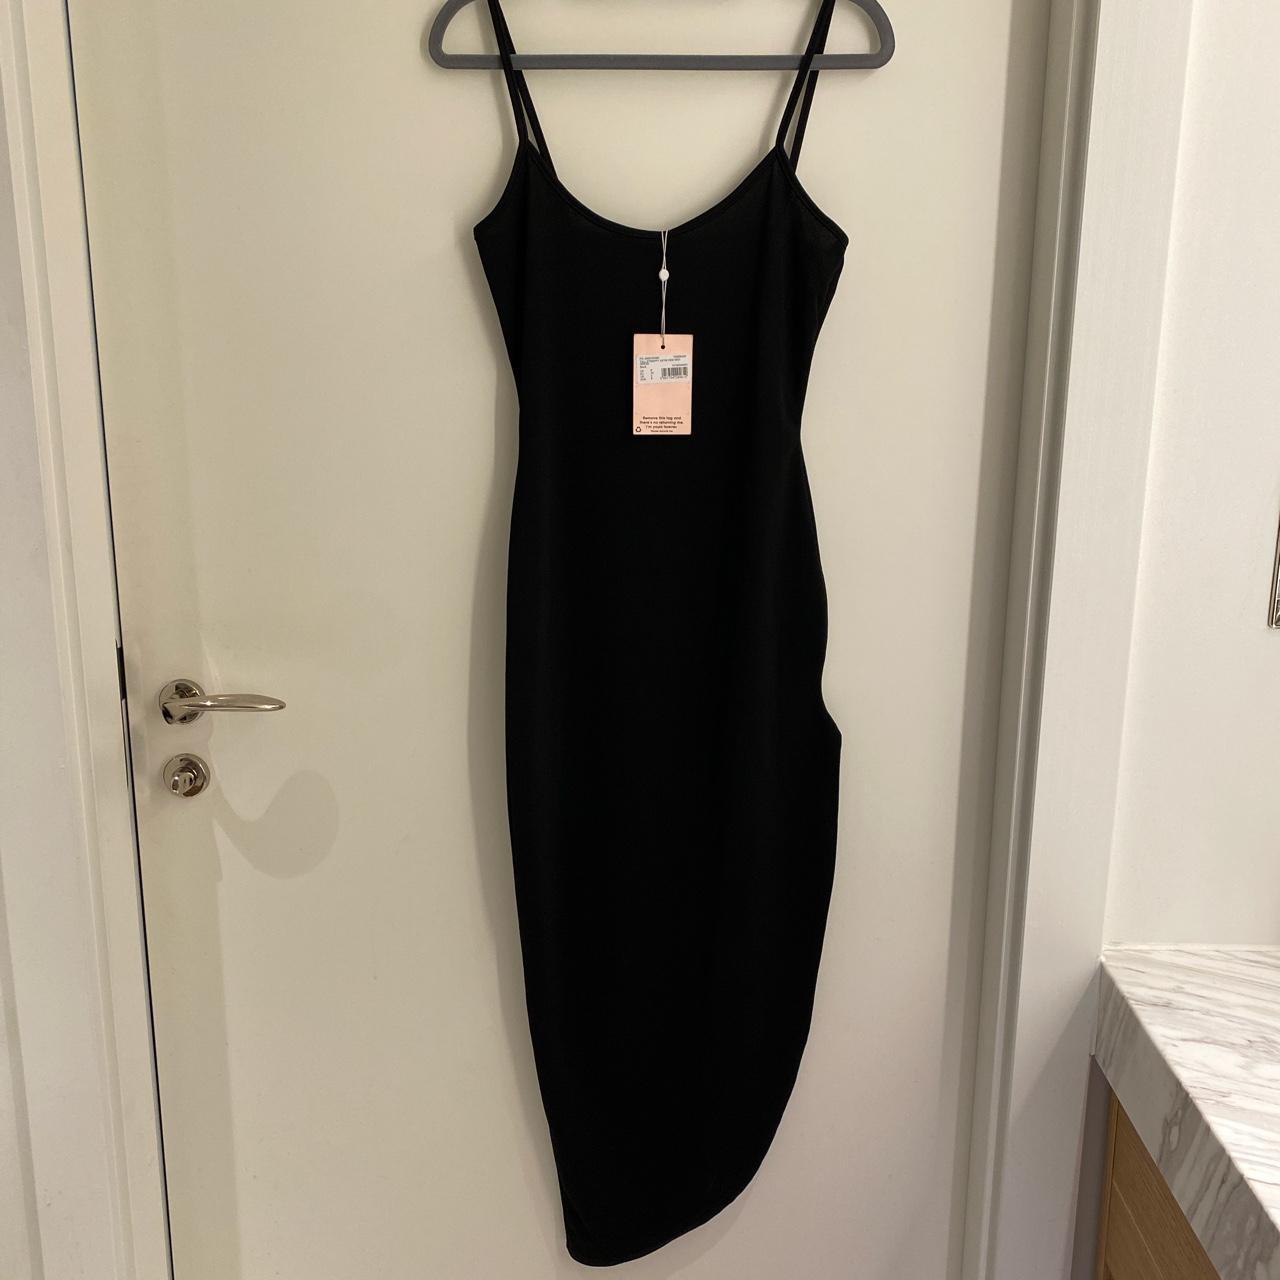 Black Tall Strappy Hem Midi Dress from Misguided,... - Depop